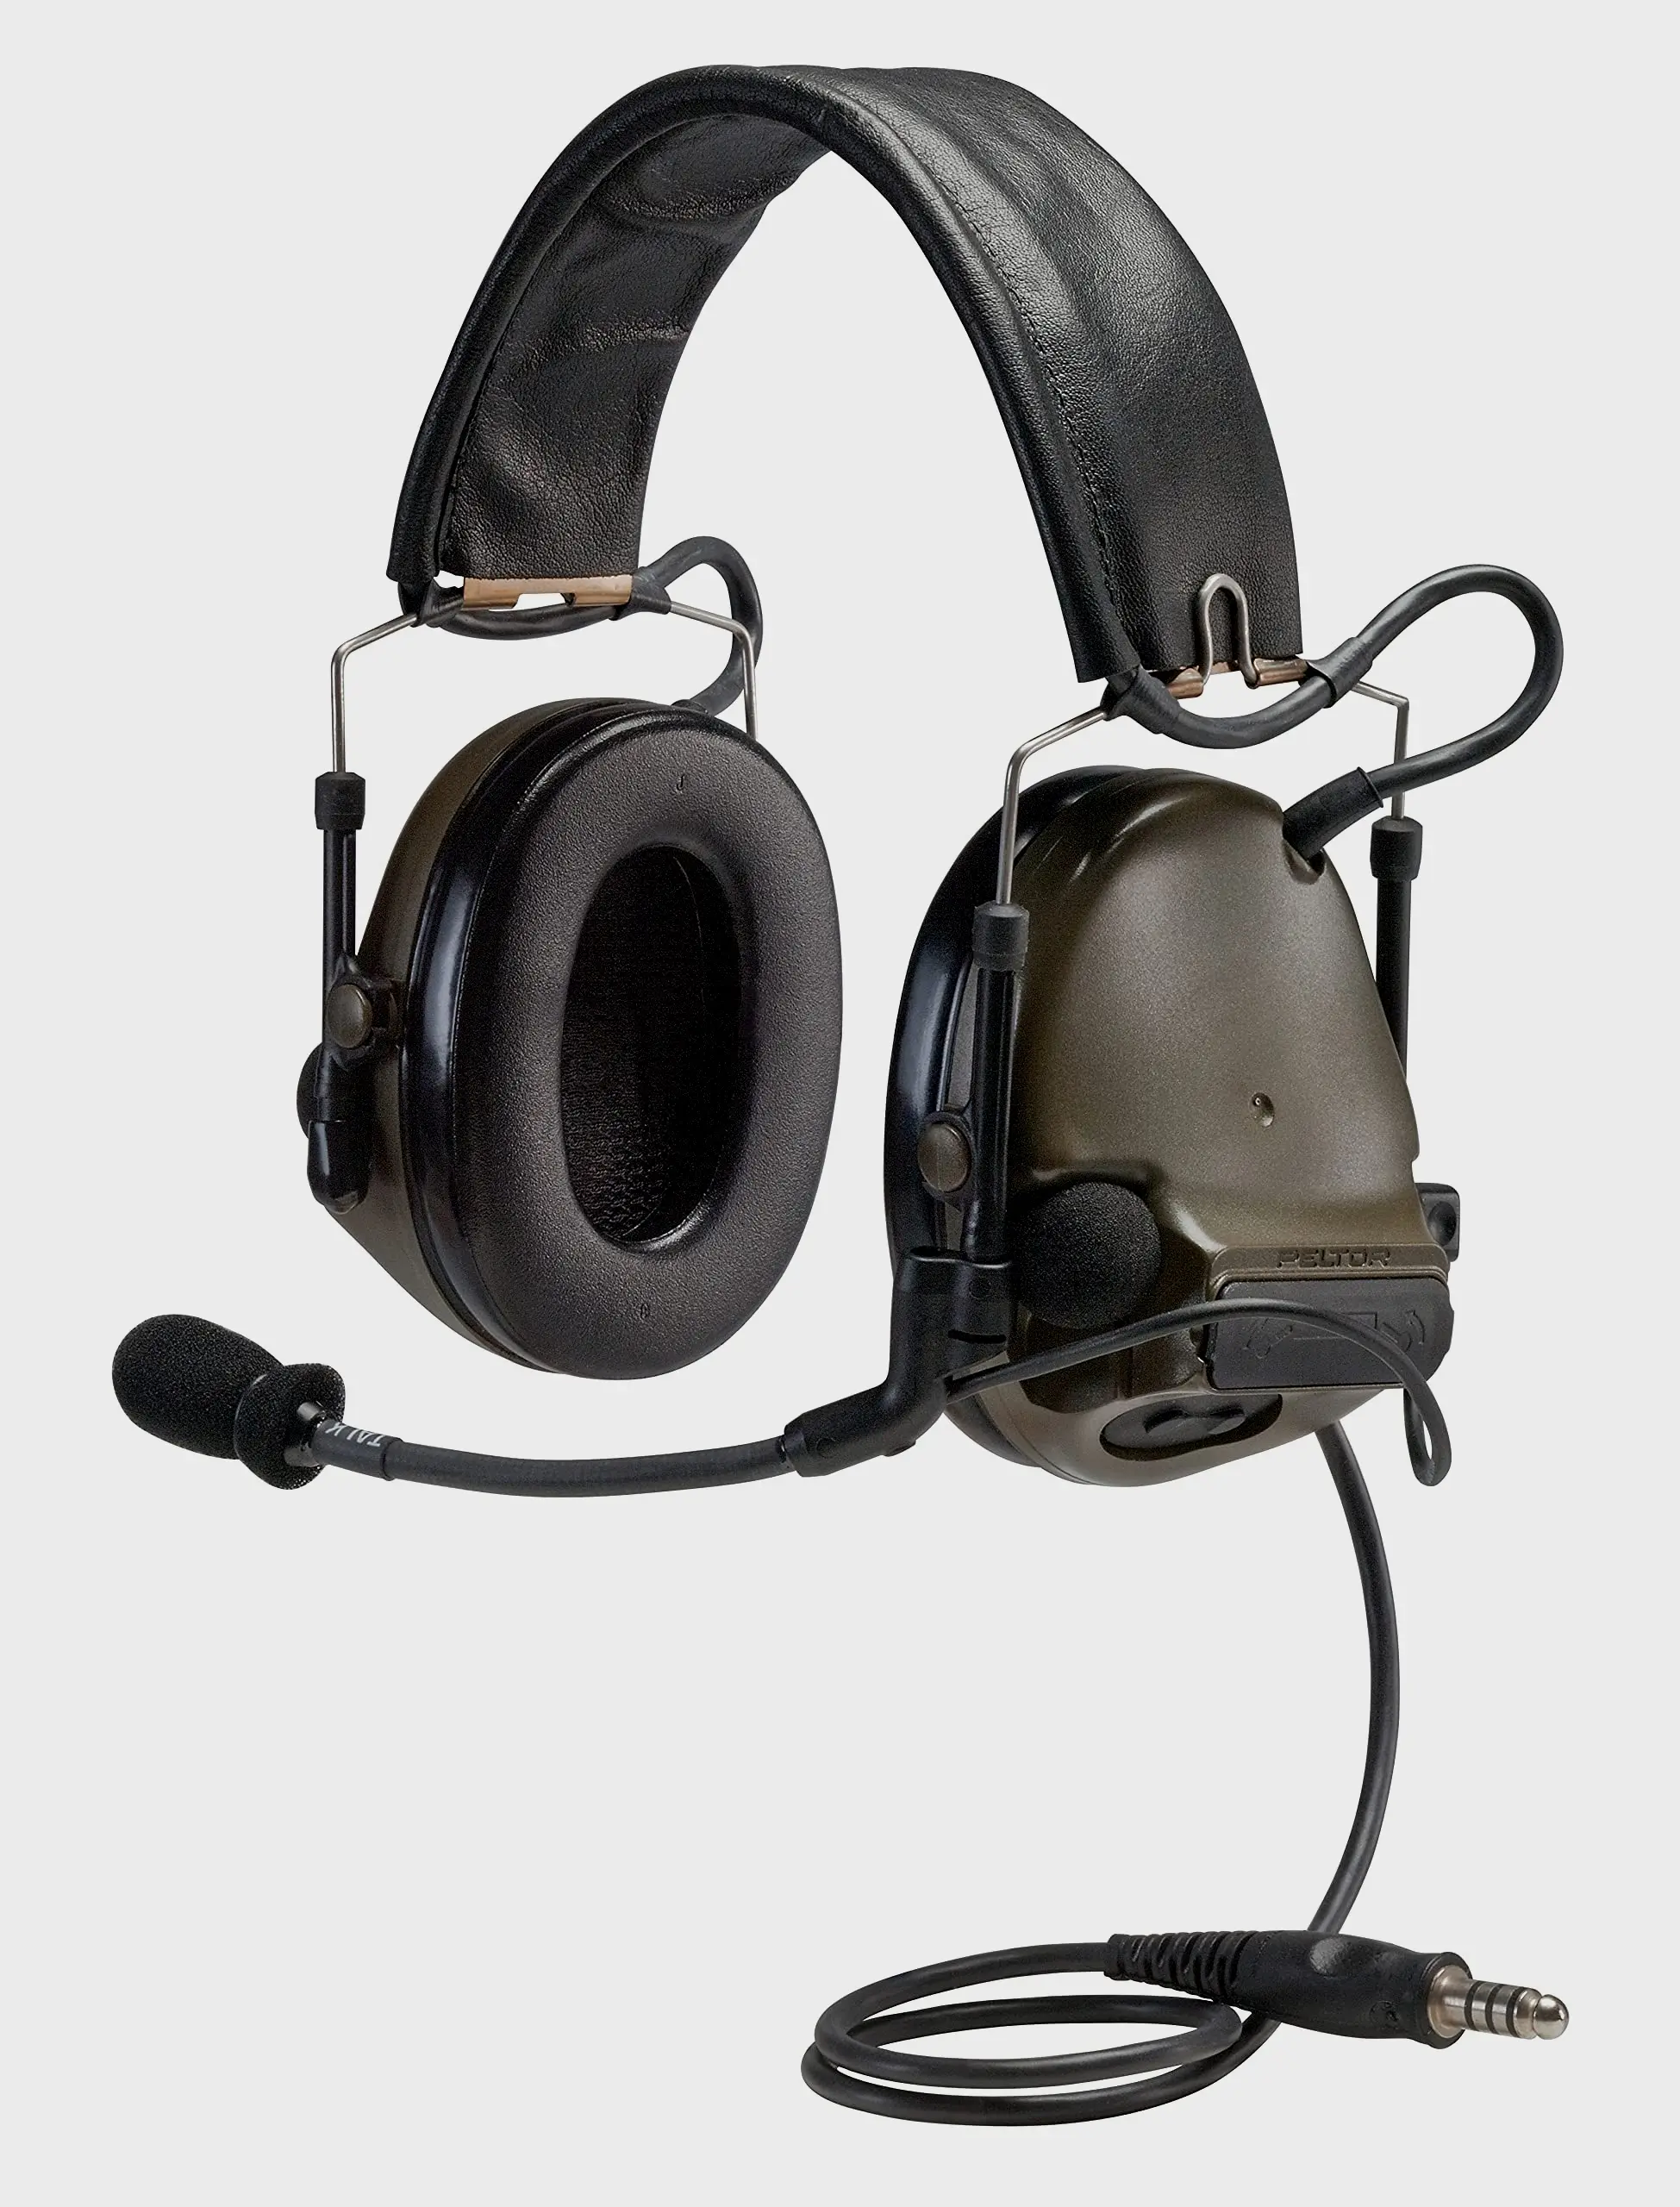 战术耳机界的标杆-Peltor COMTAC III（图片来源于网络）